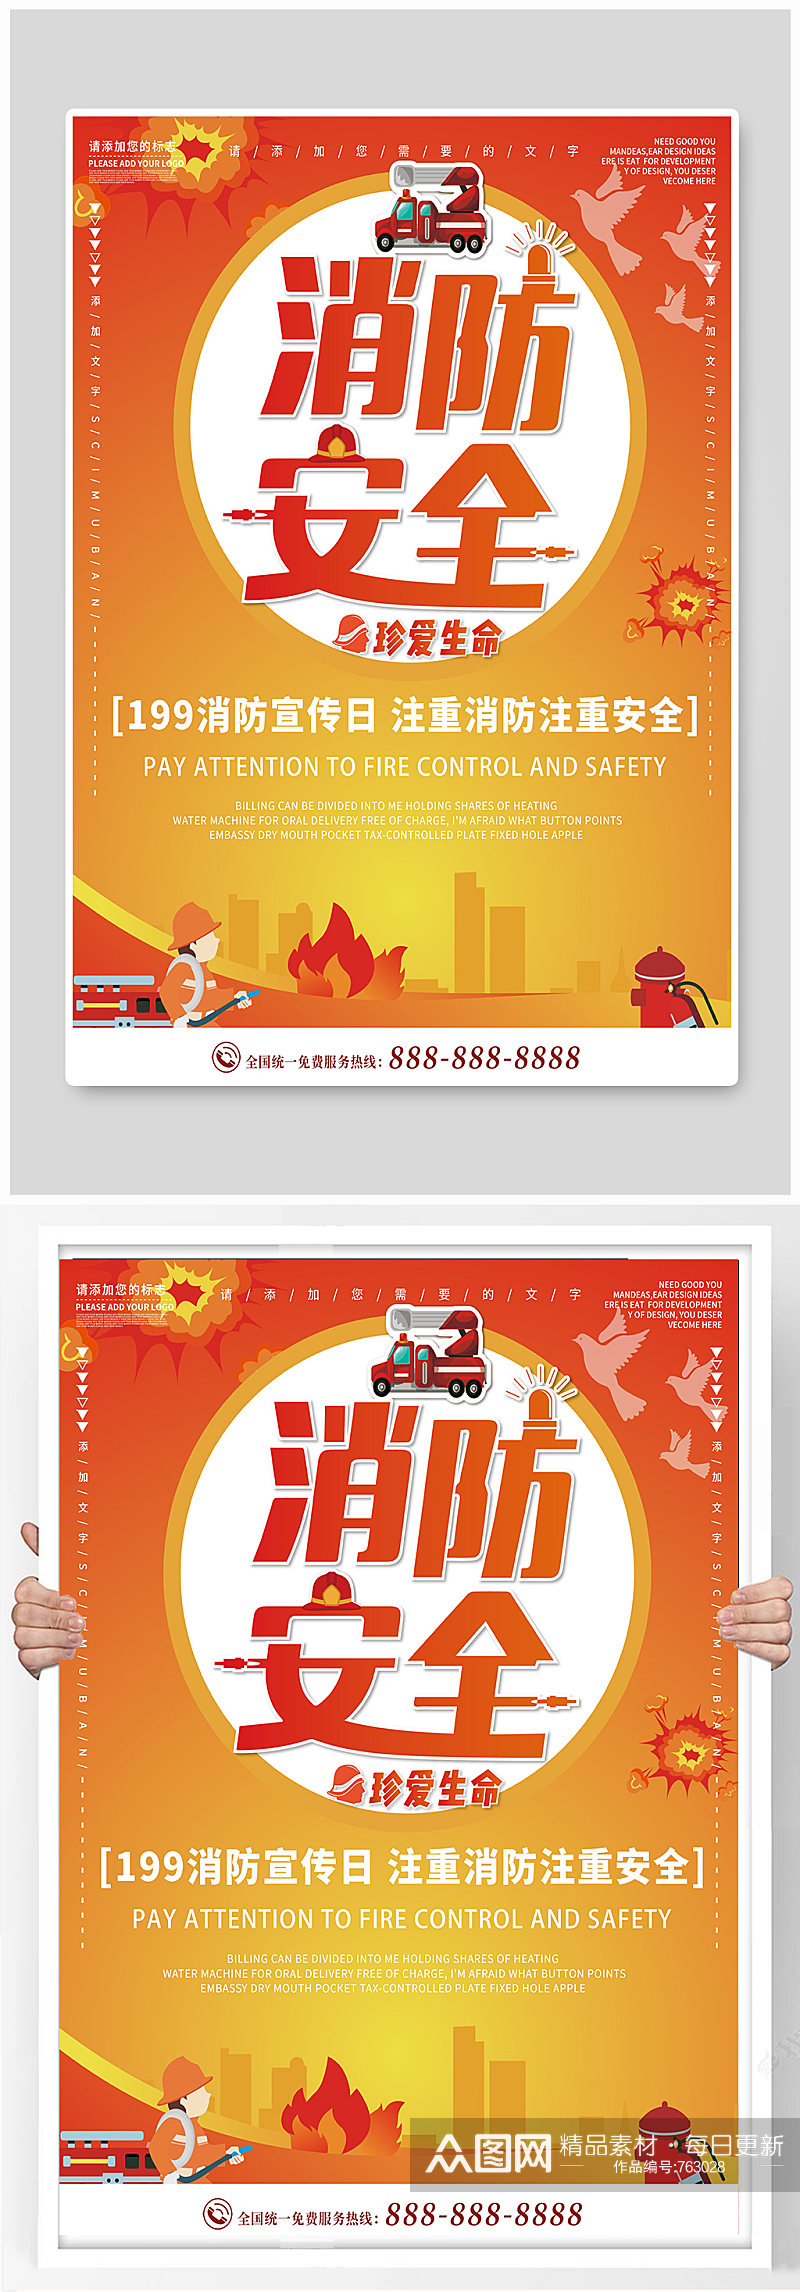 消防安全日宣传海报素材